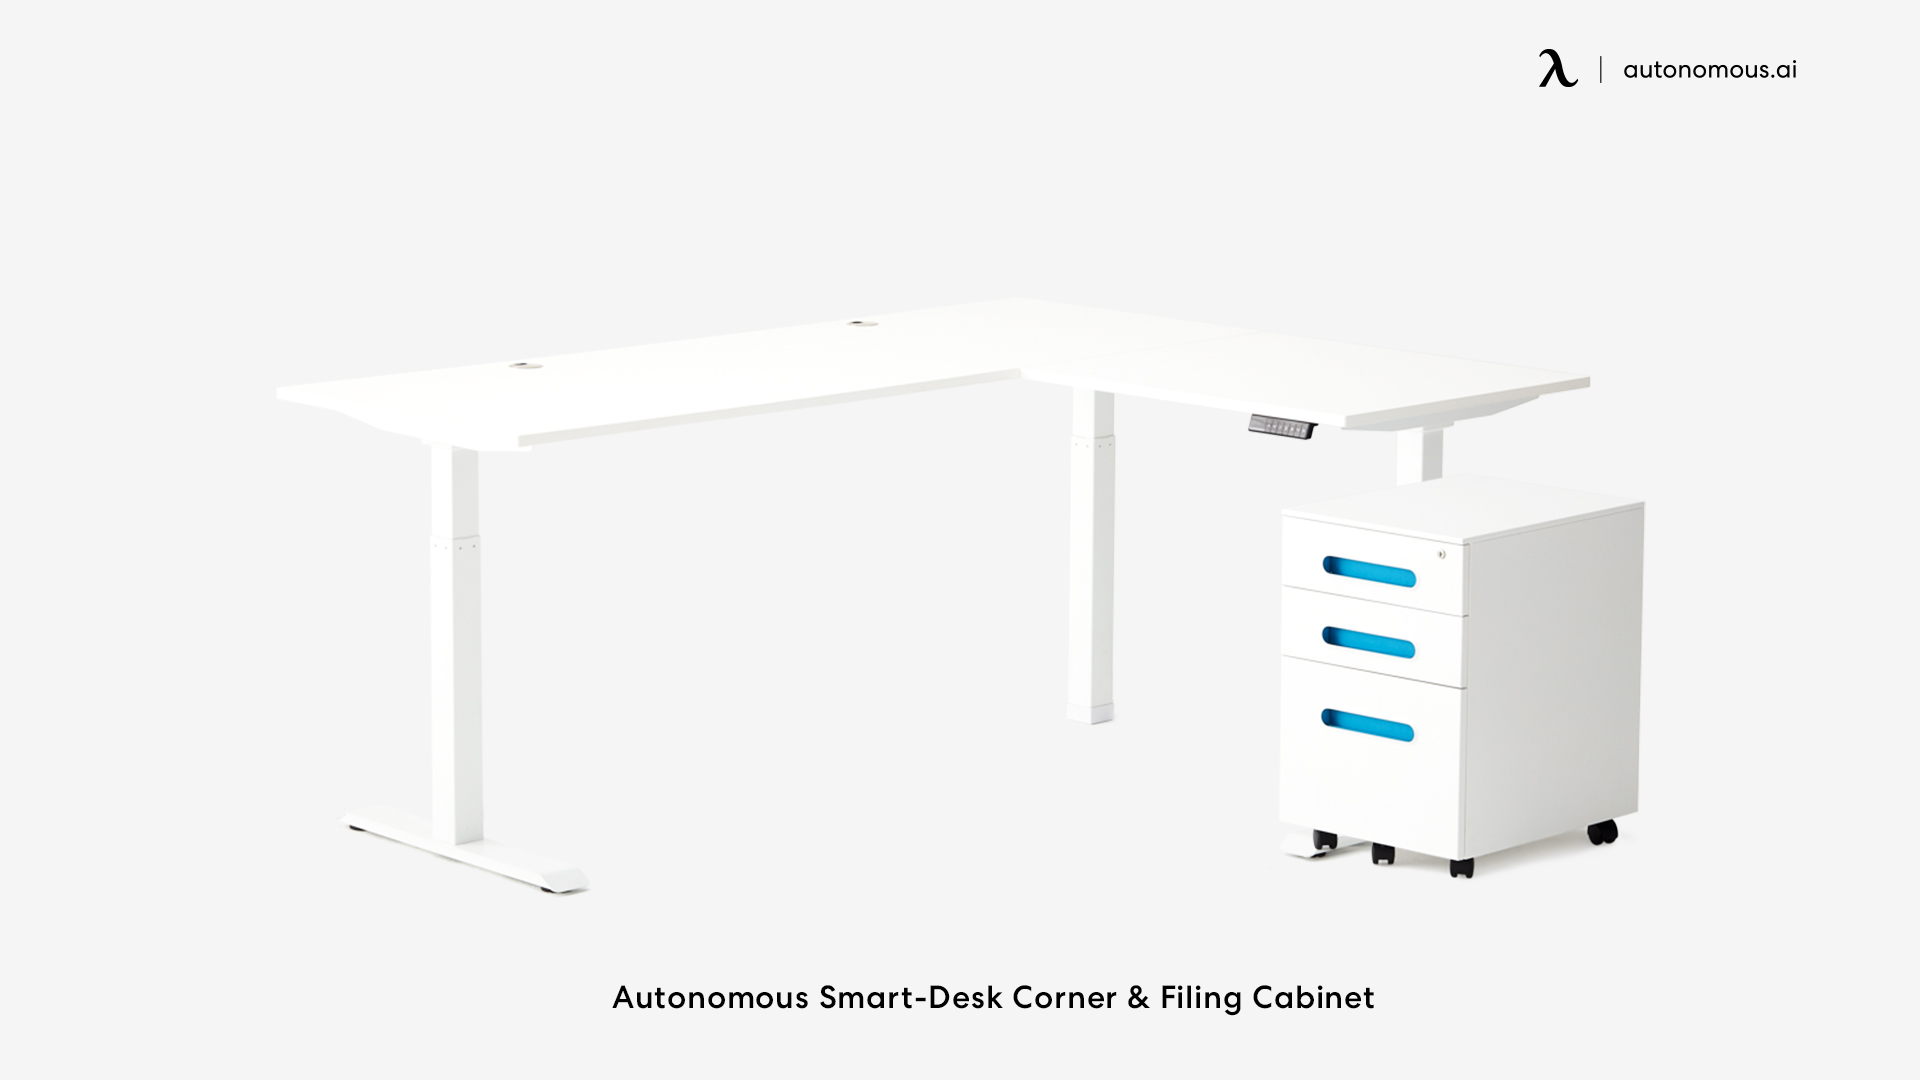 Autonomous Smart-Desk Corner & Filing Cabinet